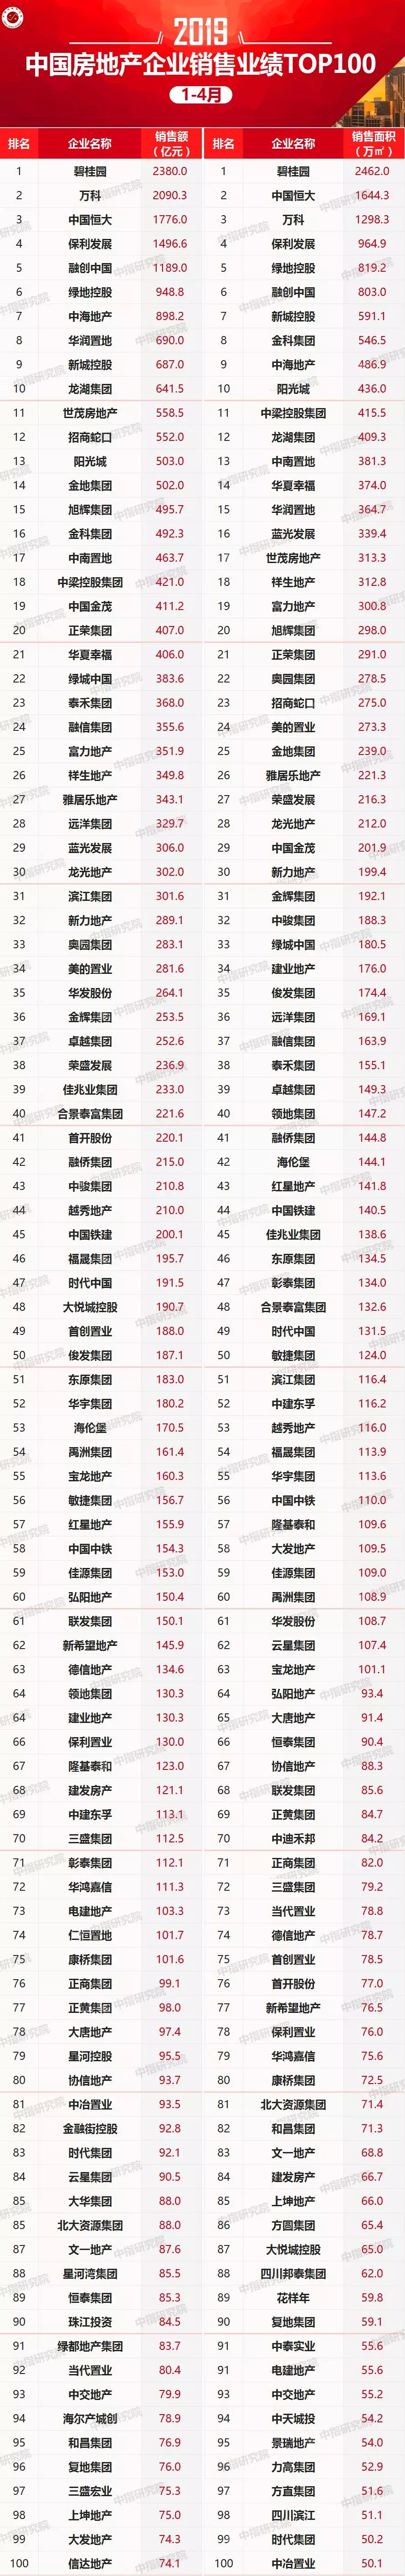 2019年1-4月中国房地产企业销售业绩100